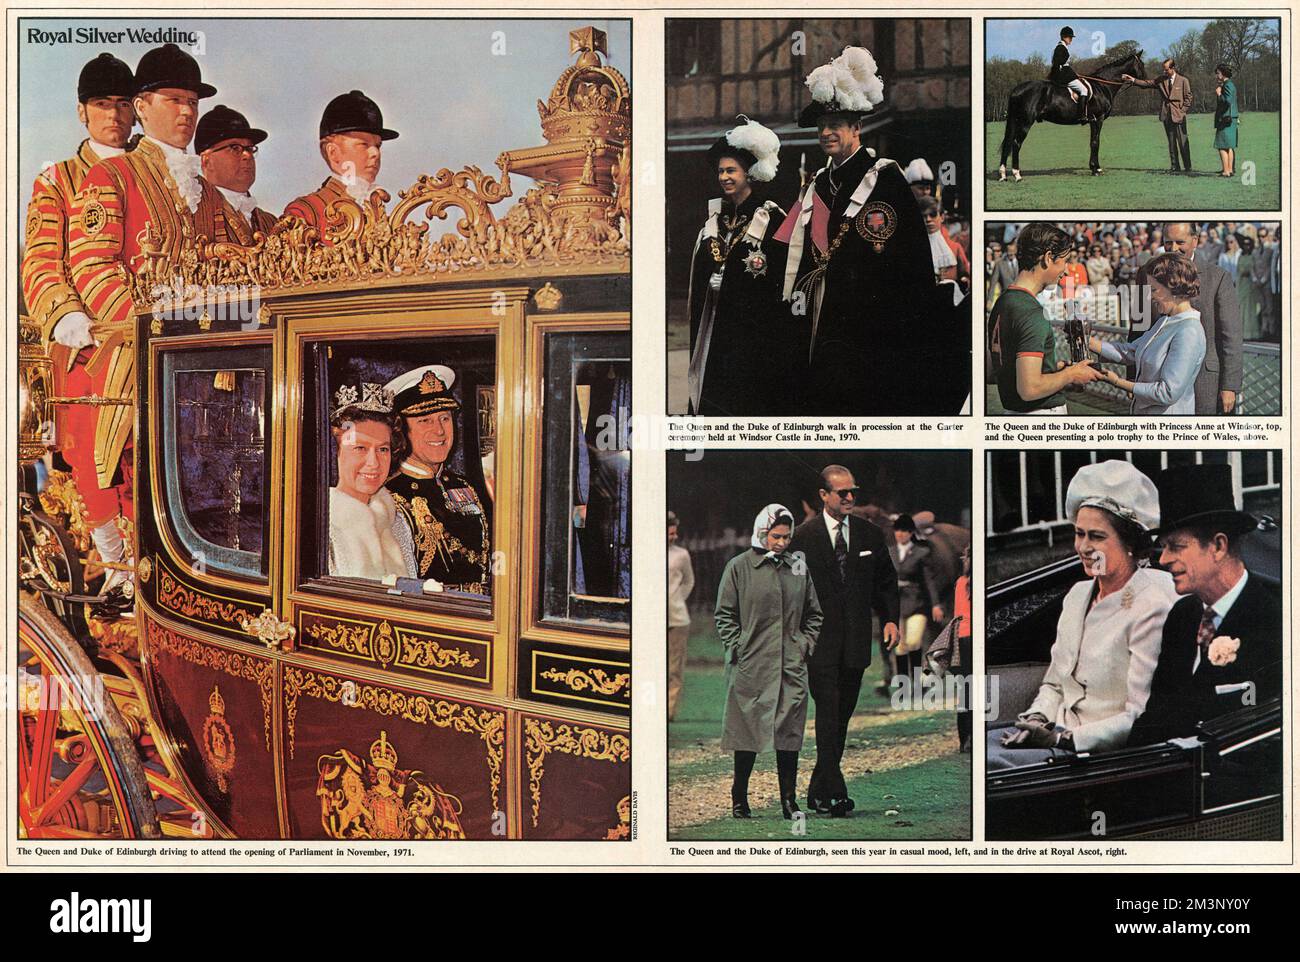 Fotos von verschiedenen Anlässen während der Herrschaft der Königin, darunter die Königin und der Herzog von Edinburgh, die zur Eröffnung des parlaments im Jahr 1971 fuhr, bei einer Prozession bei der Garter-Zeremonie im Windsor Castle im Jahr 1970 und im Royal Ascot. Stockfoto